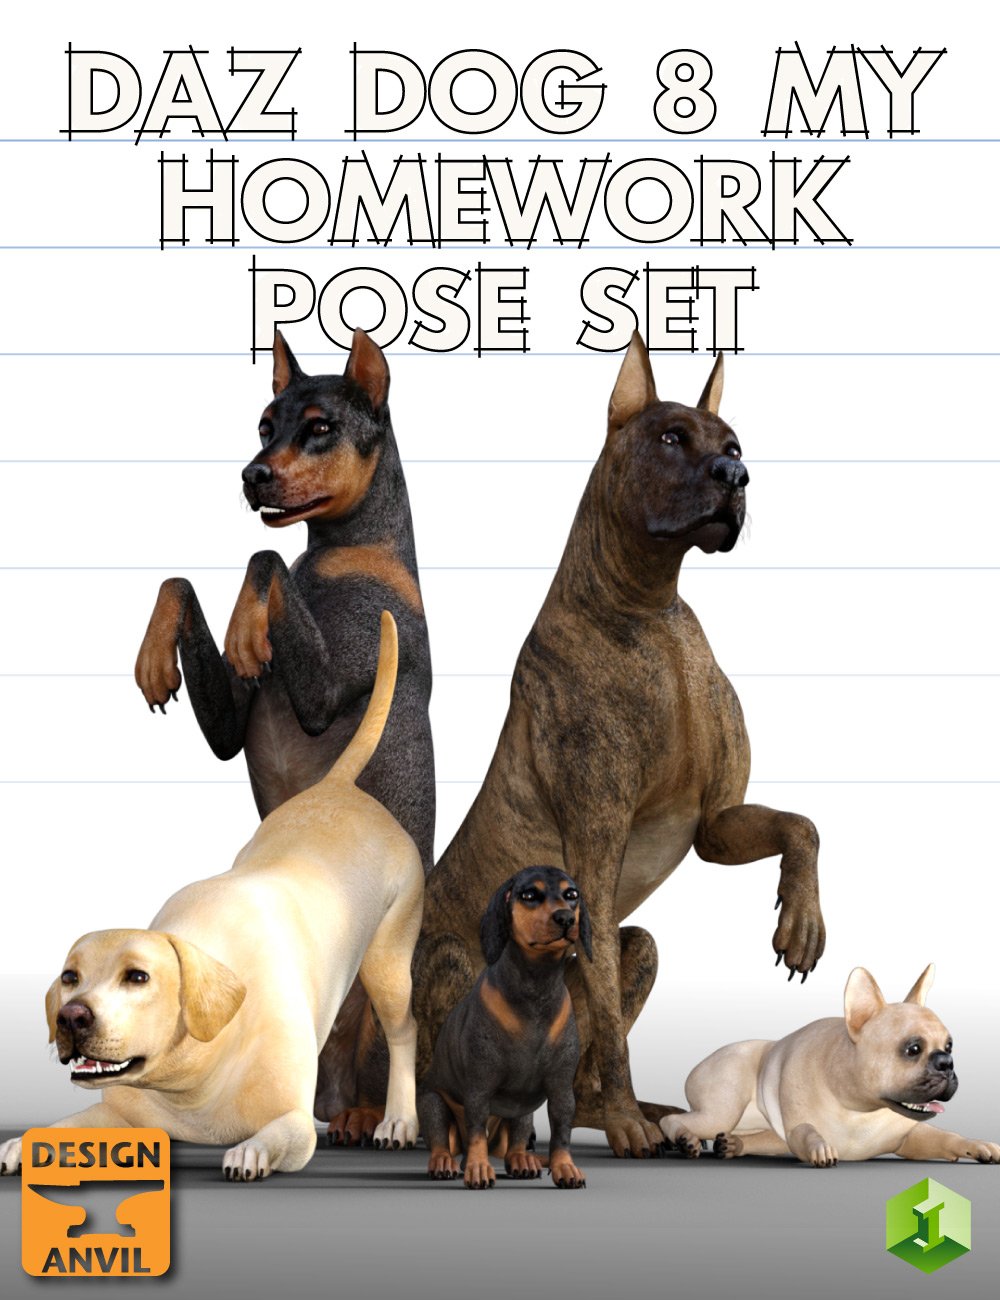 Daz Dog 8 My Homework Pose Set by: Design Anvil, 3D Models by Daz 3D